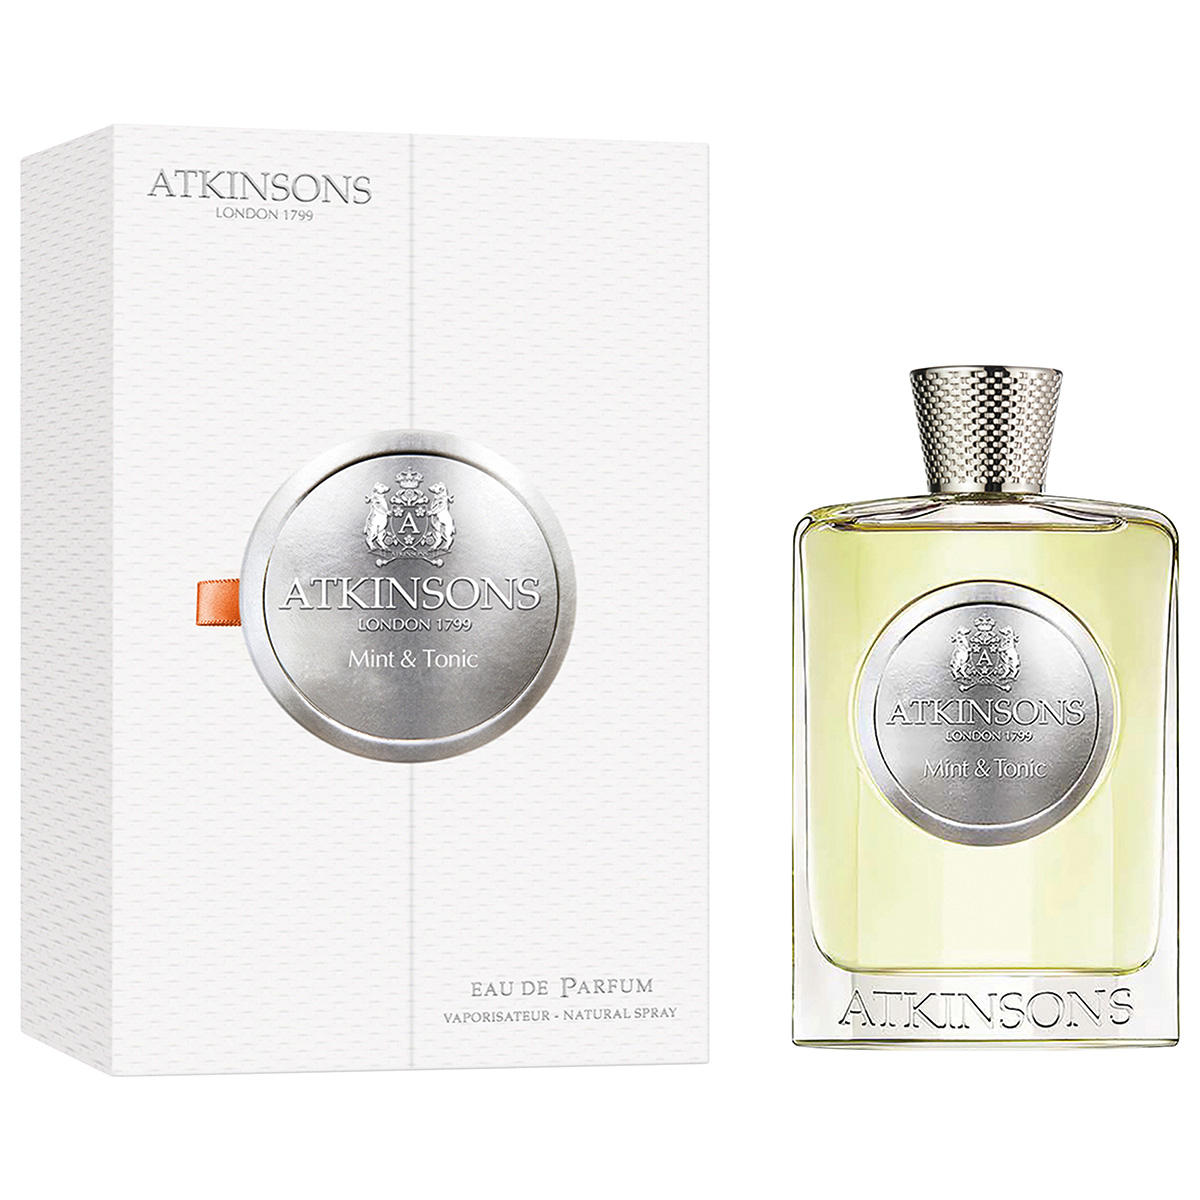 ATKINSONS Mint & Tonic Eau de Parfum 100 ml - 2